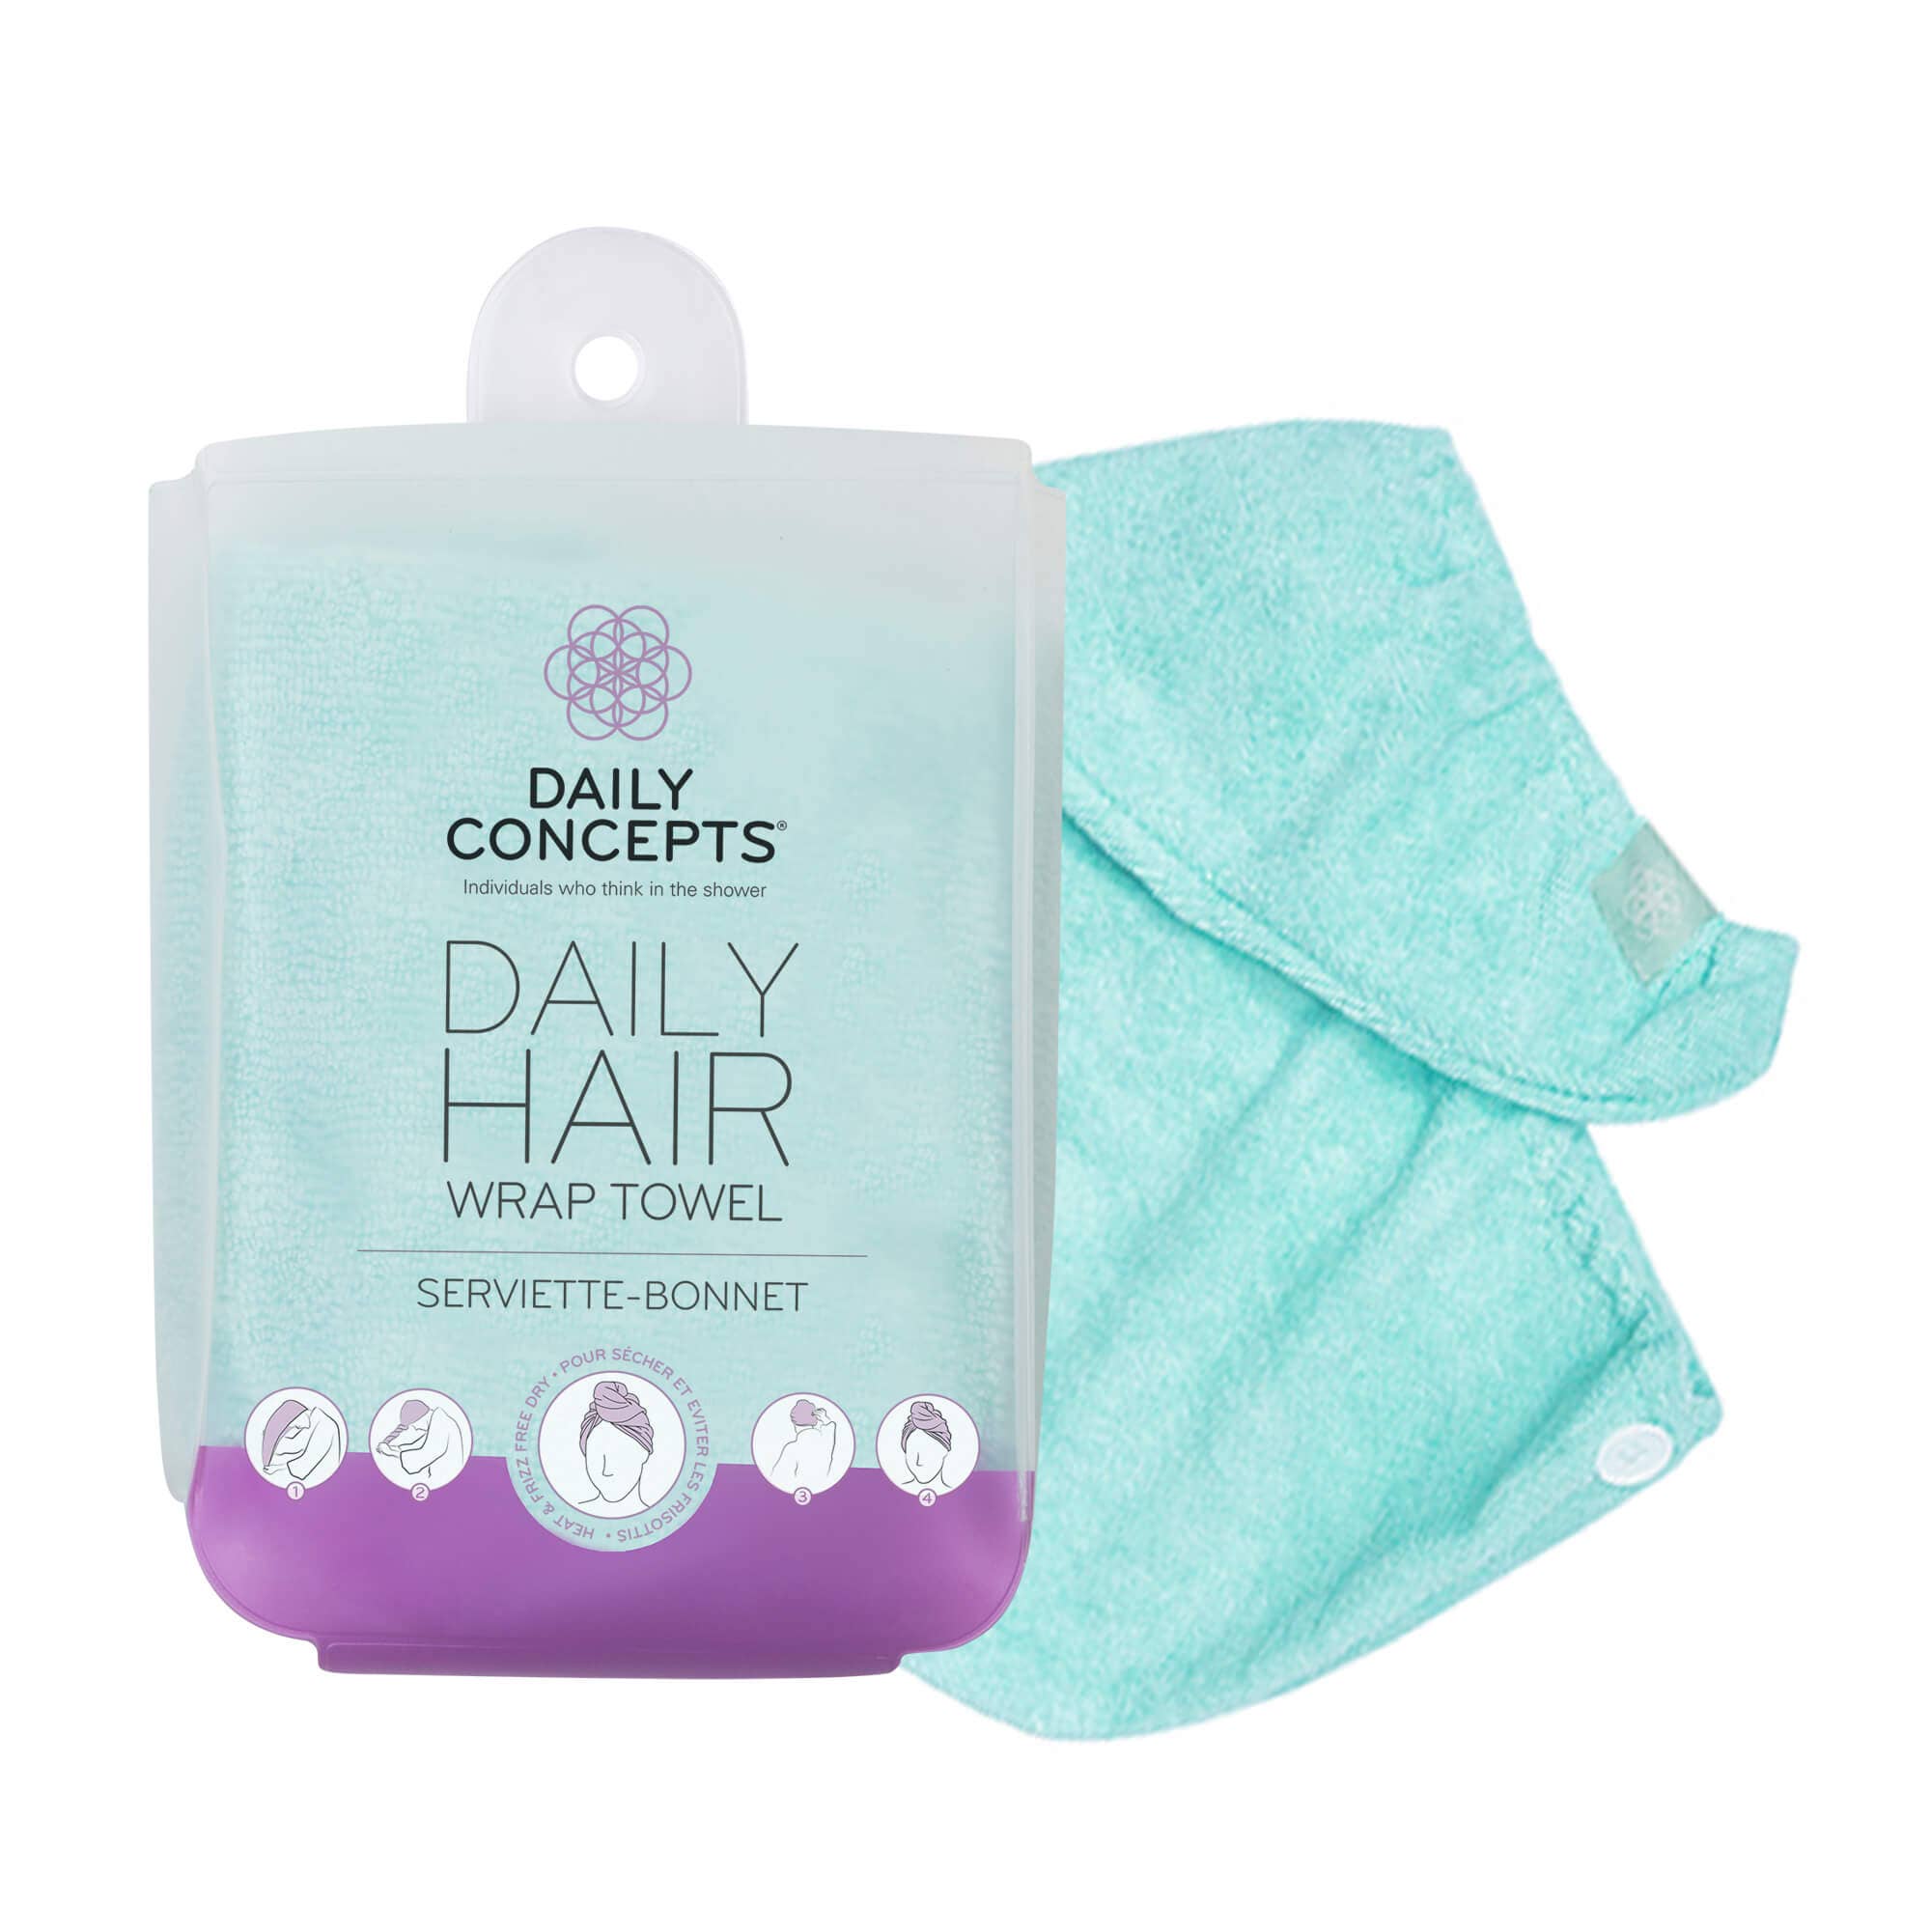 Daily Hair Towel Wrap - Teal